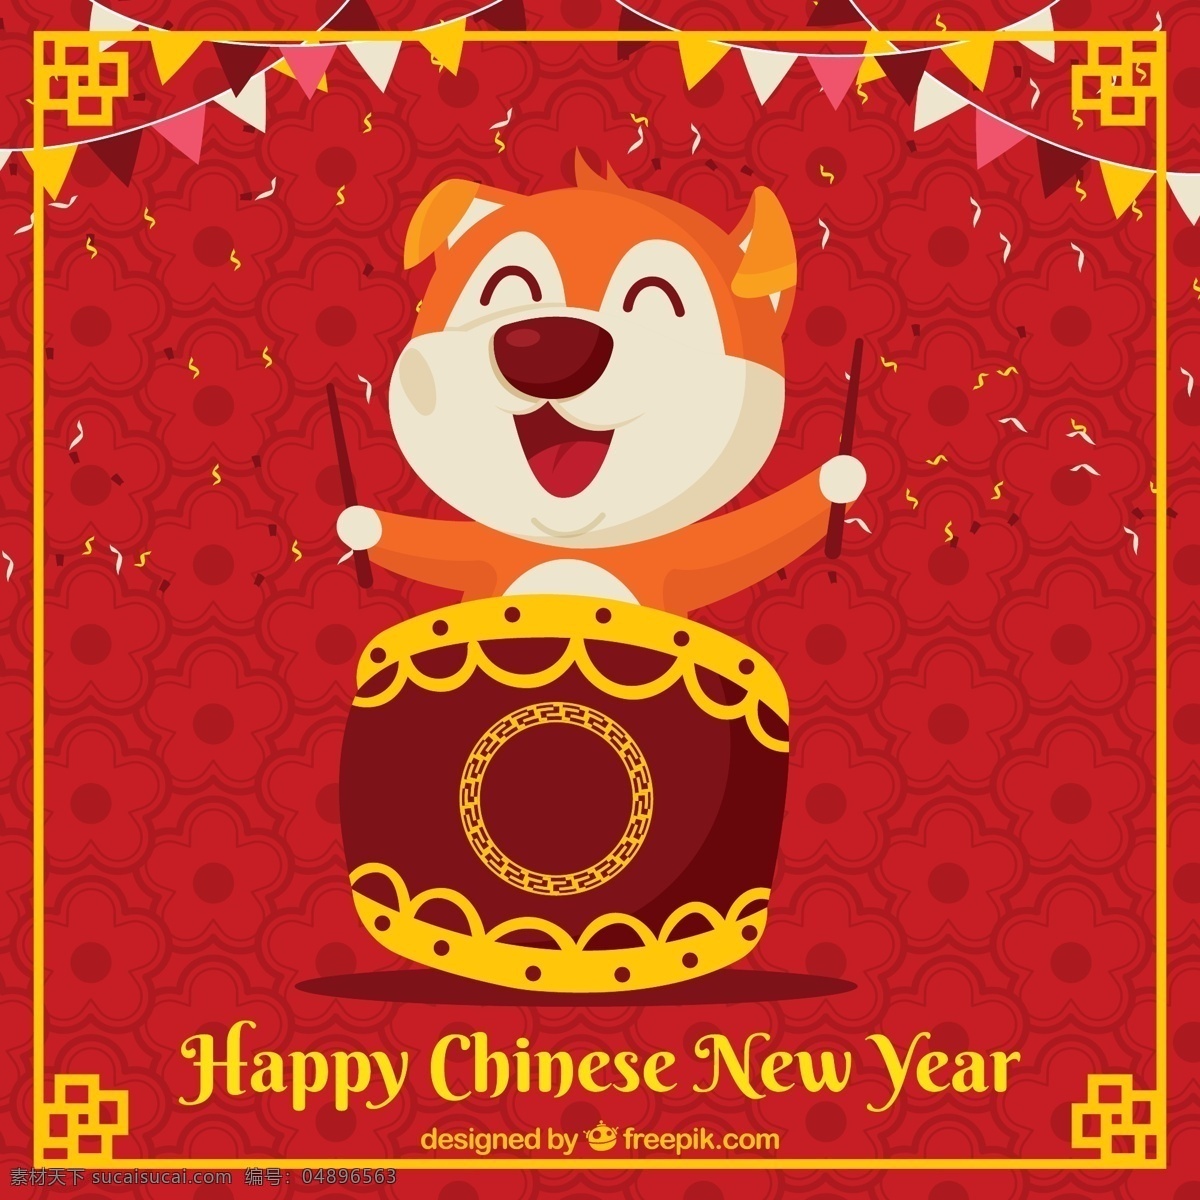 中国 新年 背景 顽皮 狗 音乐 动物 庆祝 红色 金色 打鼓 彩旗